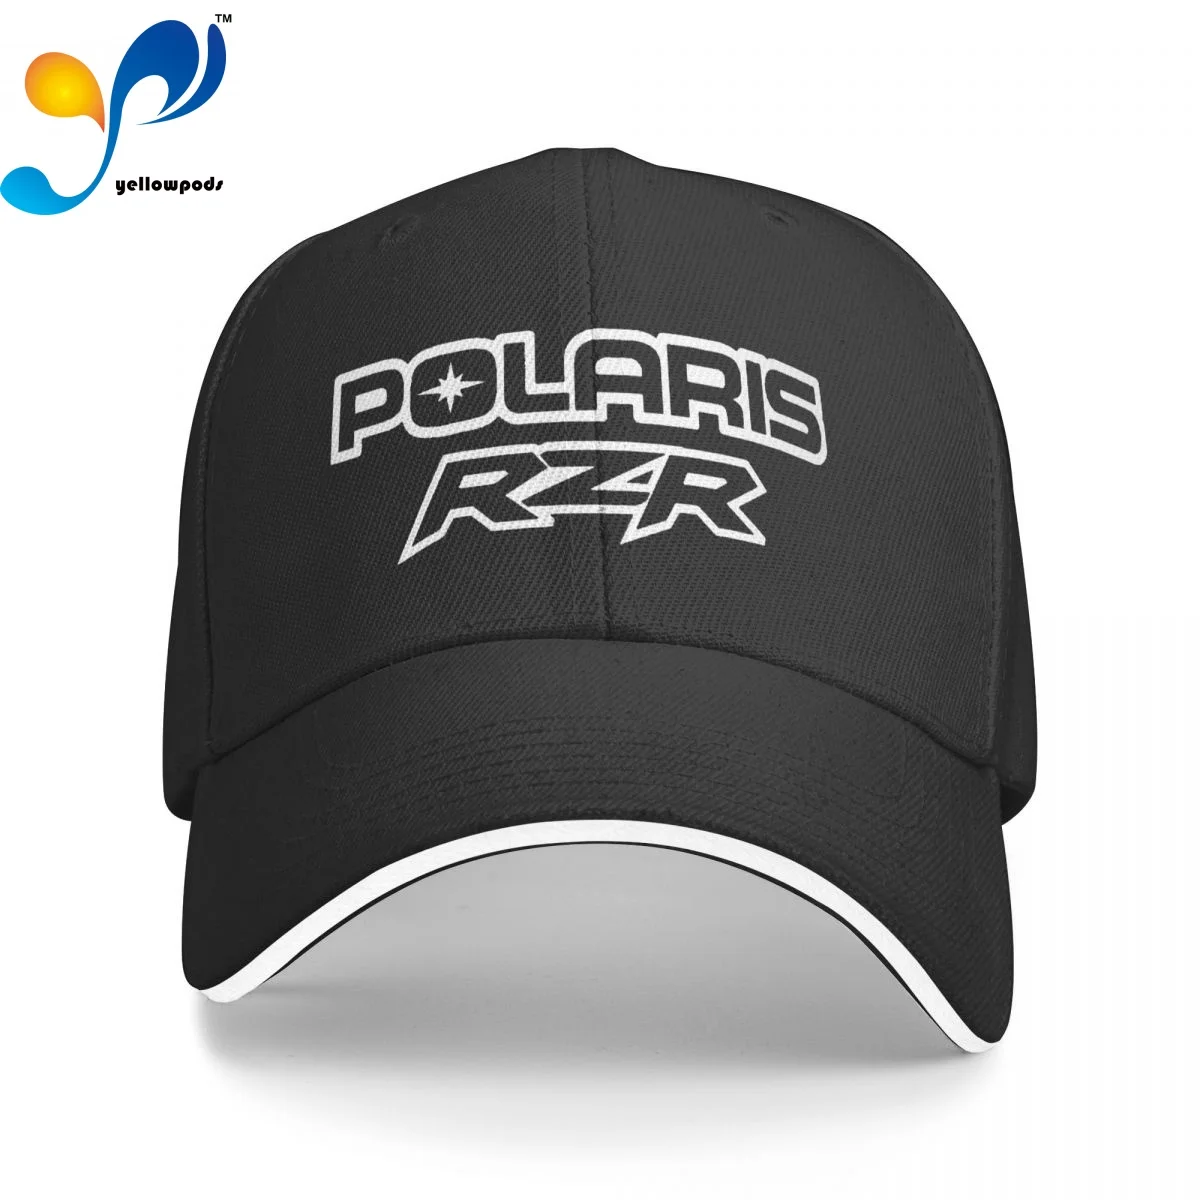 

Polaris Rzr Utv 1 Trucker Cap Snapback Hat for Men Baseball Mens Hats Caps for Logo